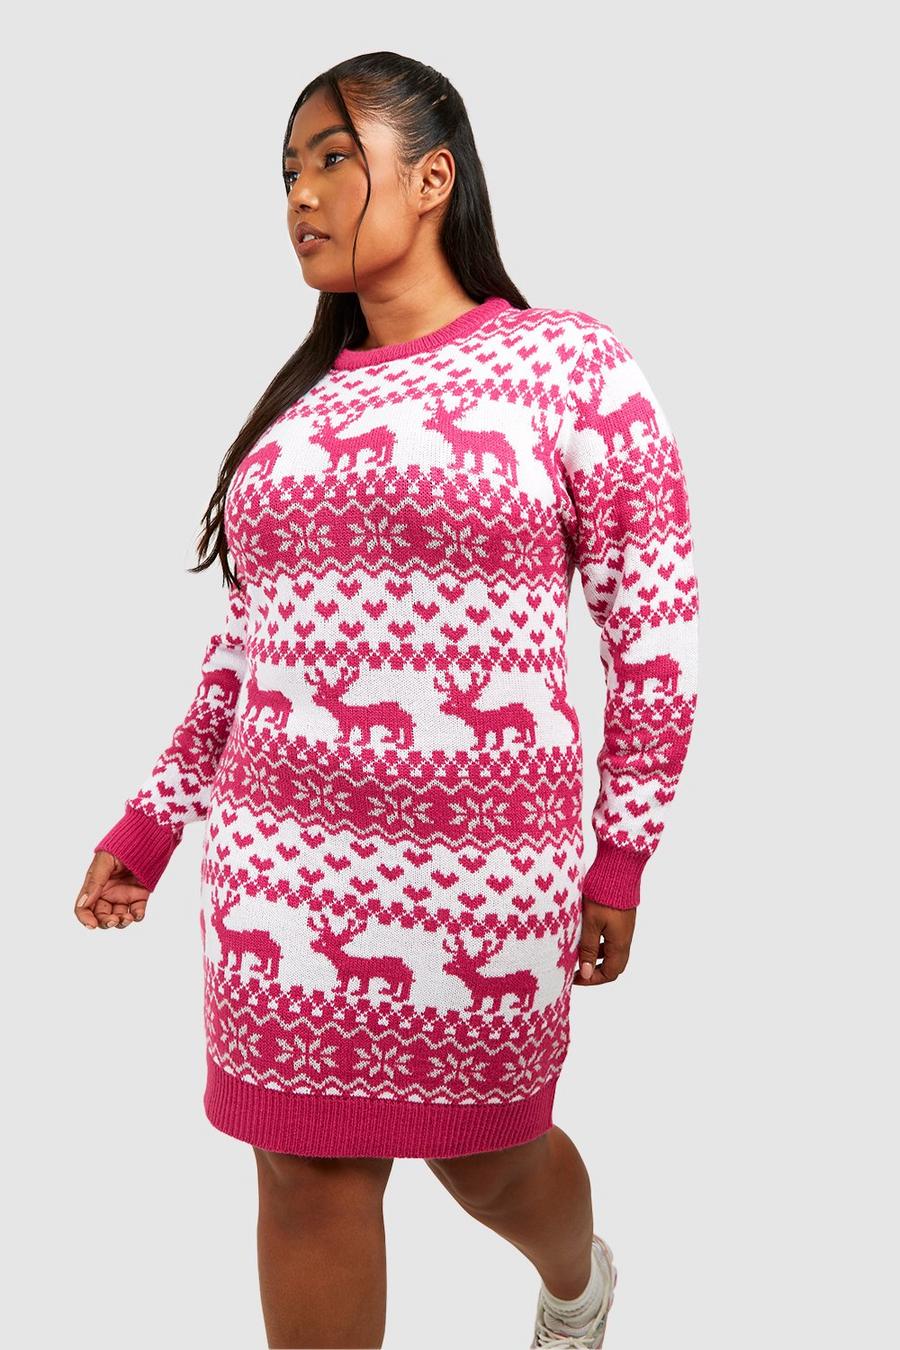 Plus Weihnachts-Pulloverkleid, Hot pink